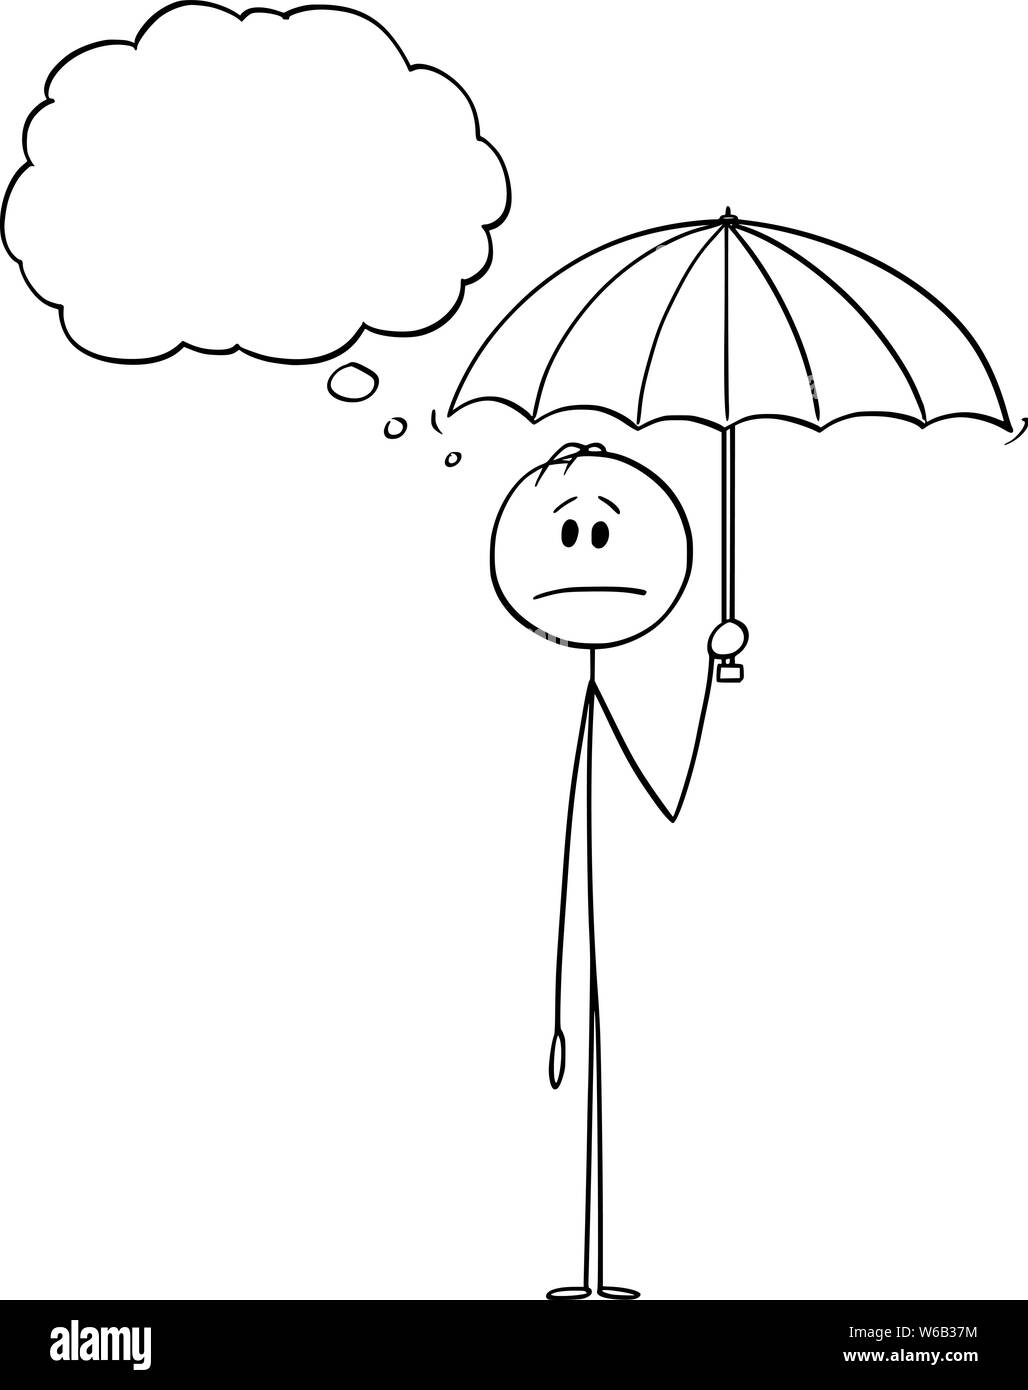 Vector cartoon stick figure dessin illustration conceptuelle de l'homme ou businessman holding umbrella. Il y a bulle vide pour votre texte. Illustration de Vecteur